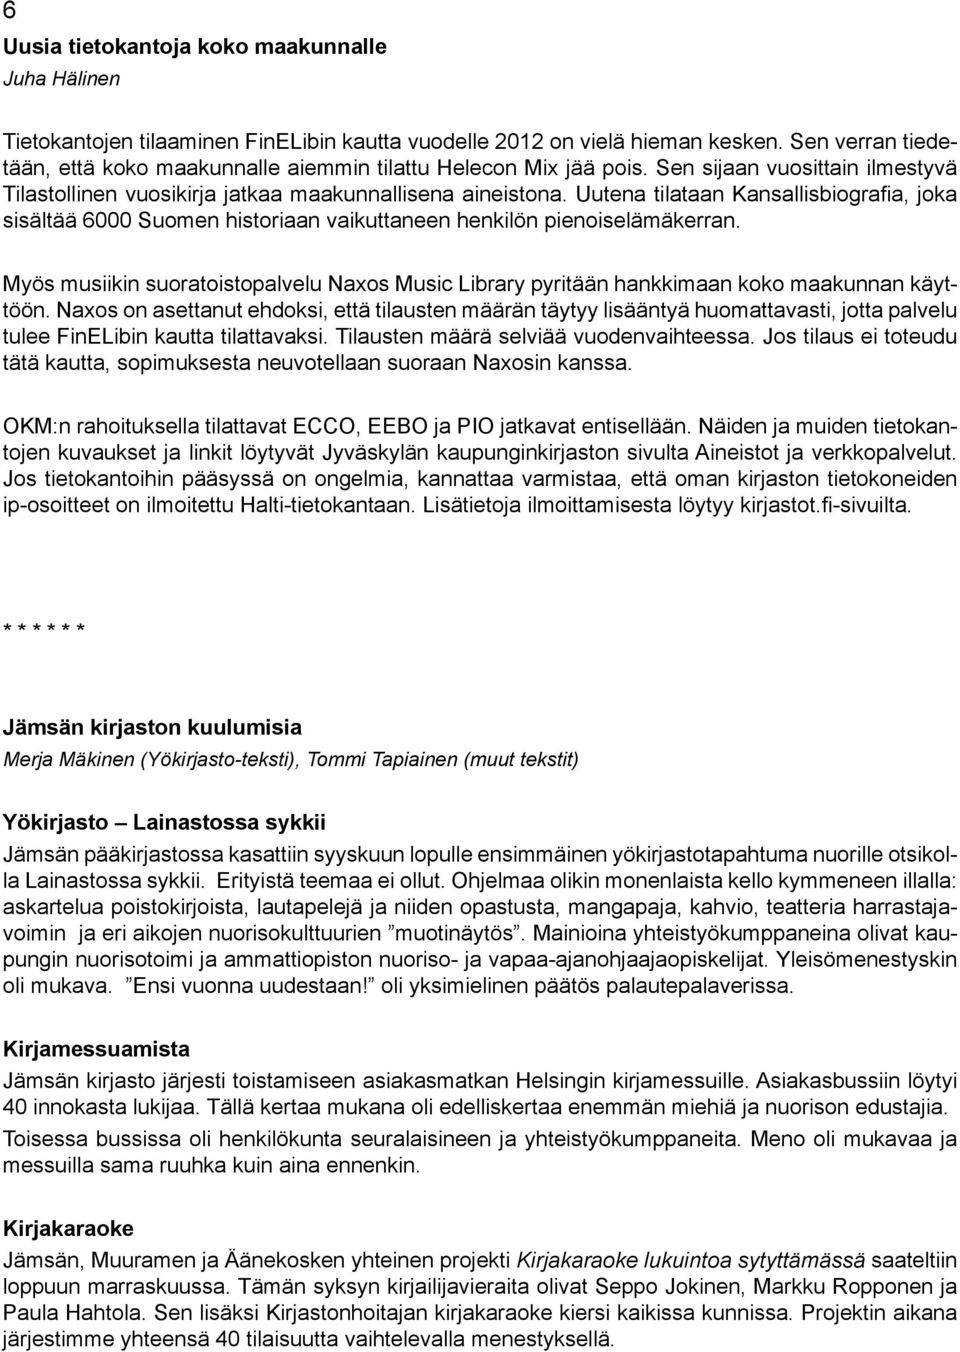 Uutena tilataan Kansallisbiografia, joka sisältää 6000 Suomen historiaan vaikuttaneen henkilön pienoiselämäkerran.